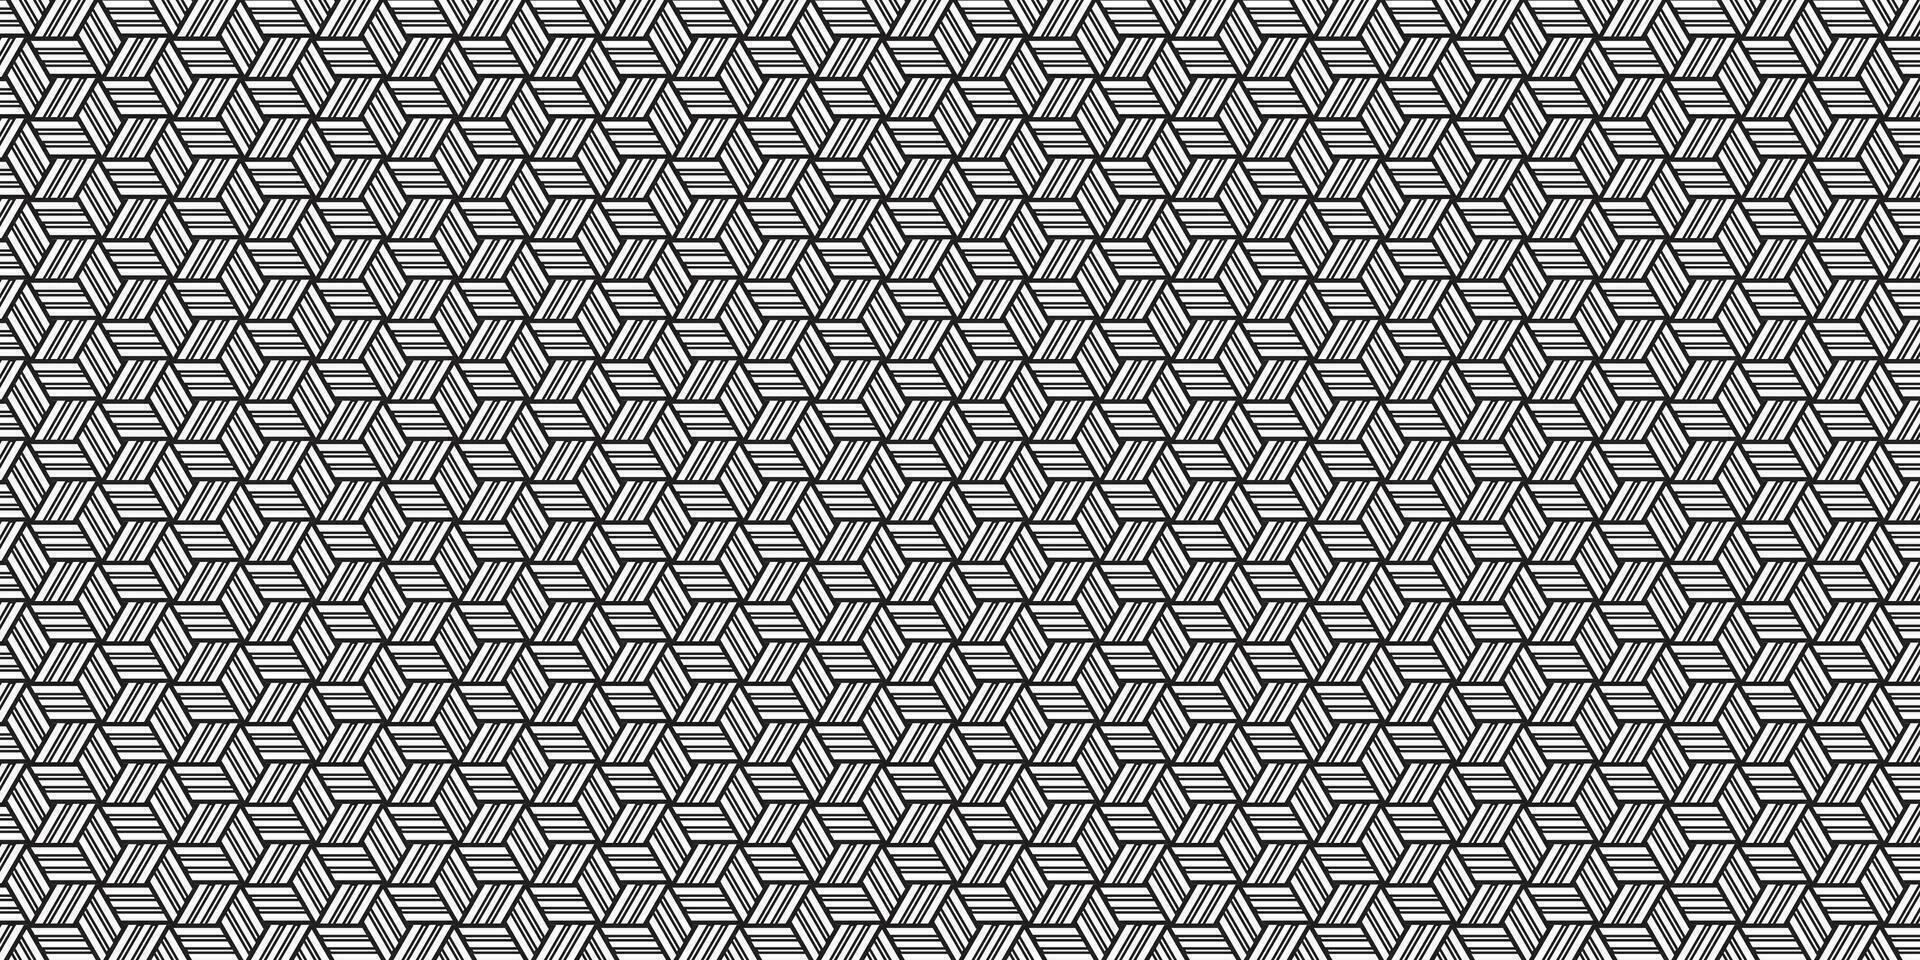 abstrakt geometrisch nahtlos Stoff, Textil- Muster Hintergrund vektor